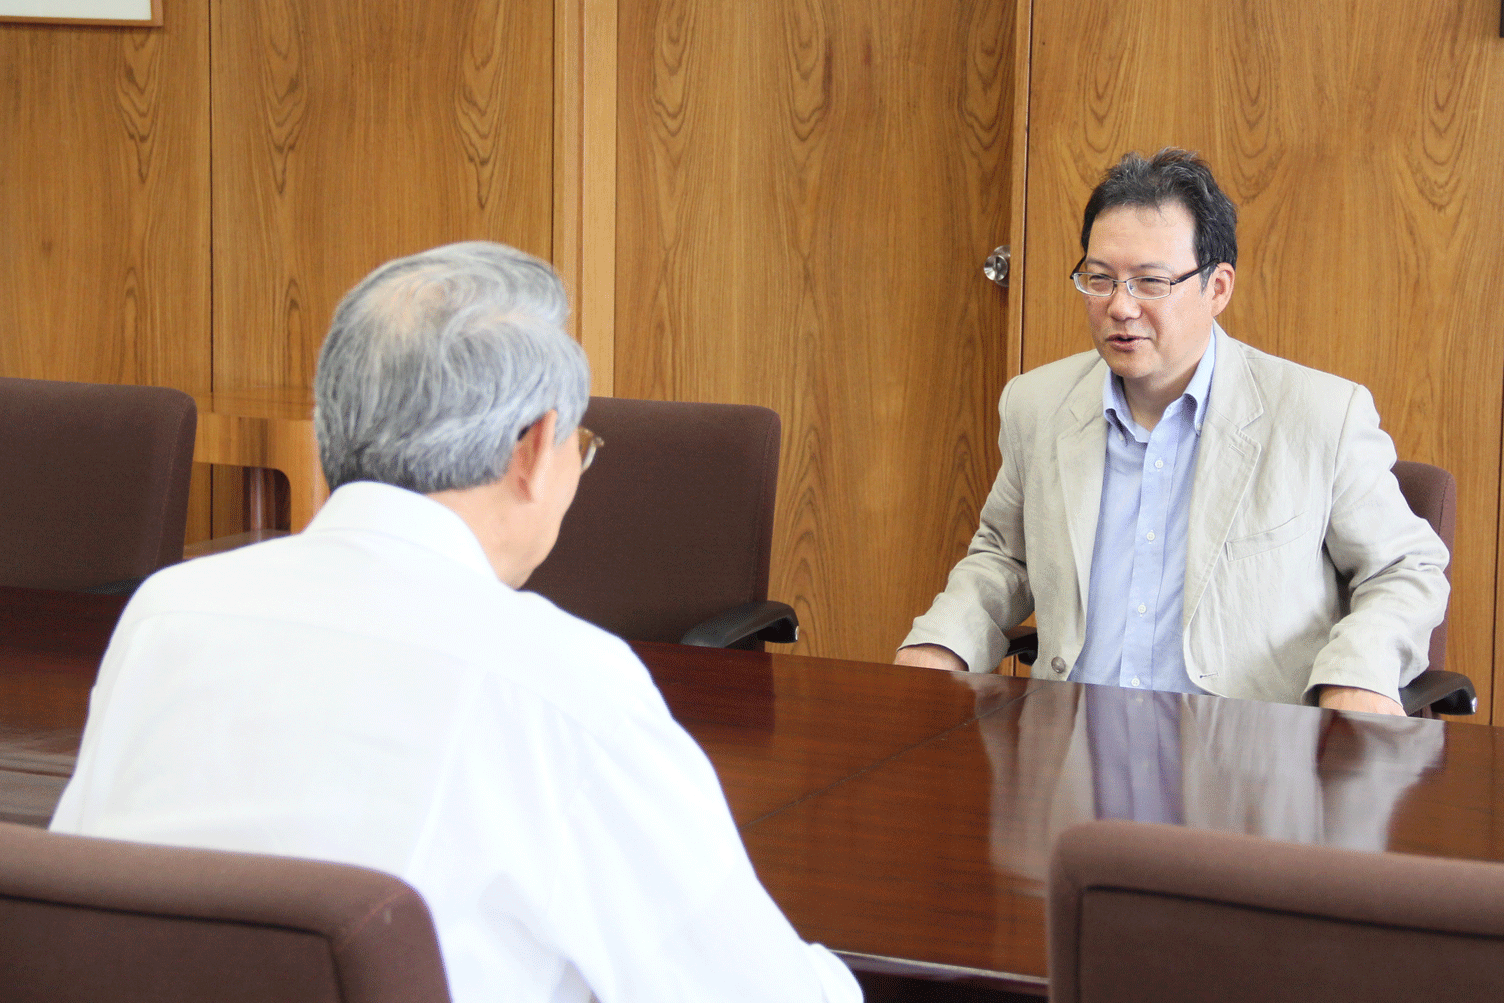 受賞の決定を学長に報告する坂井教授の画像